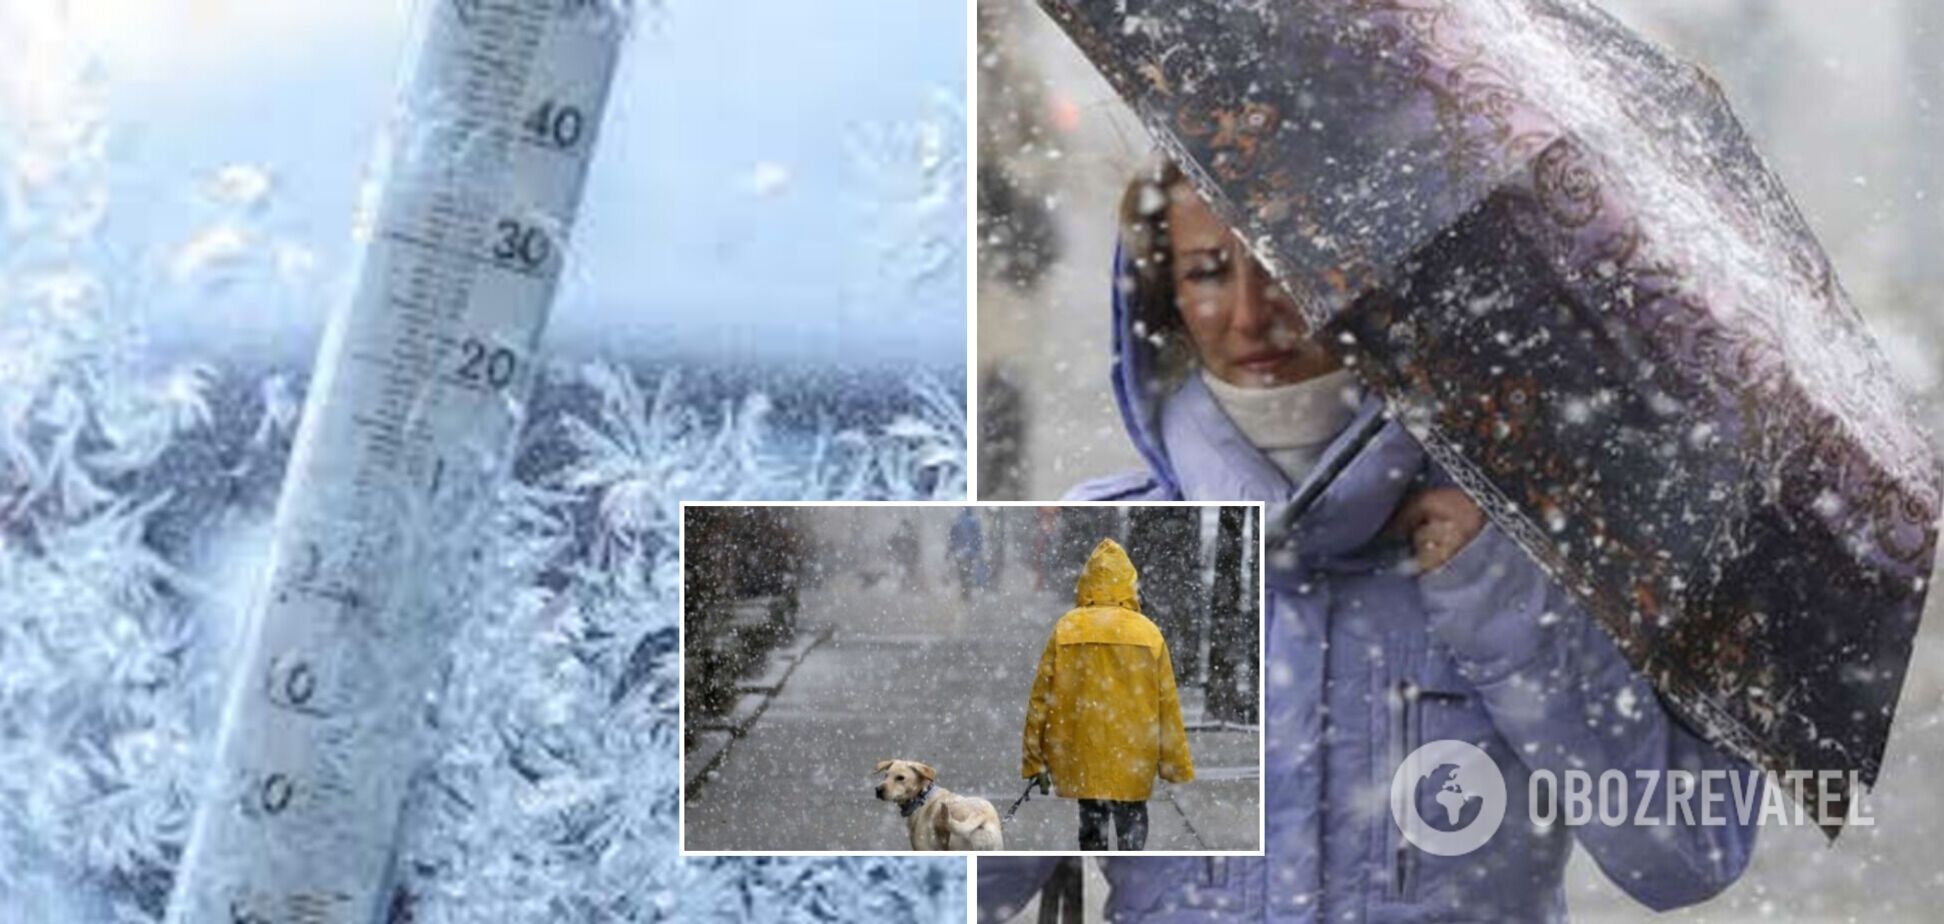 Снег с дождем и гололедица на дорогах: синоптики предупредили о плохой погоде в субботу. Карта